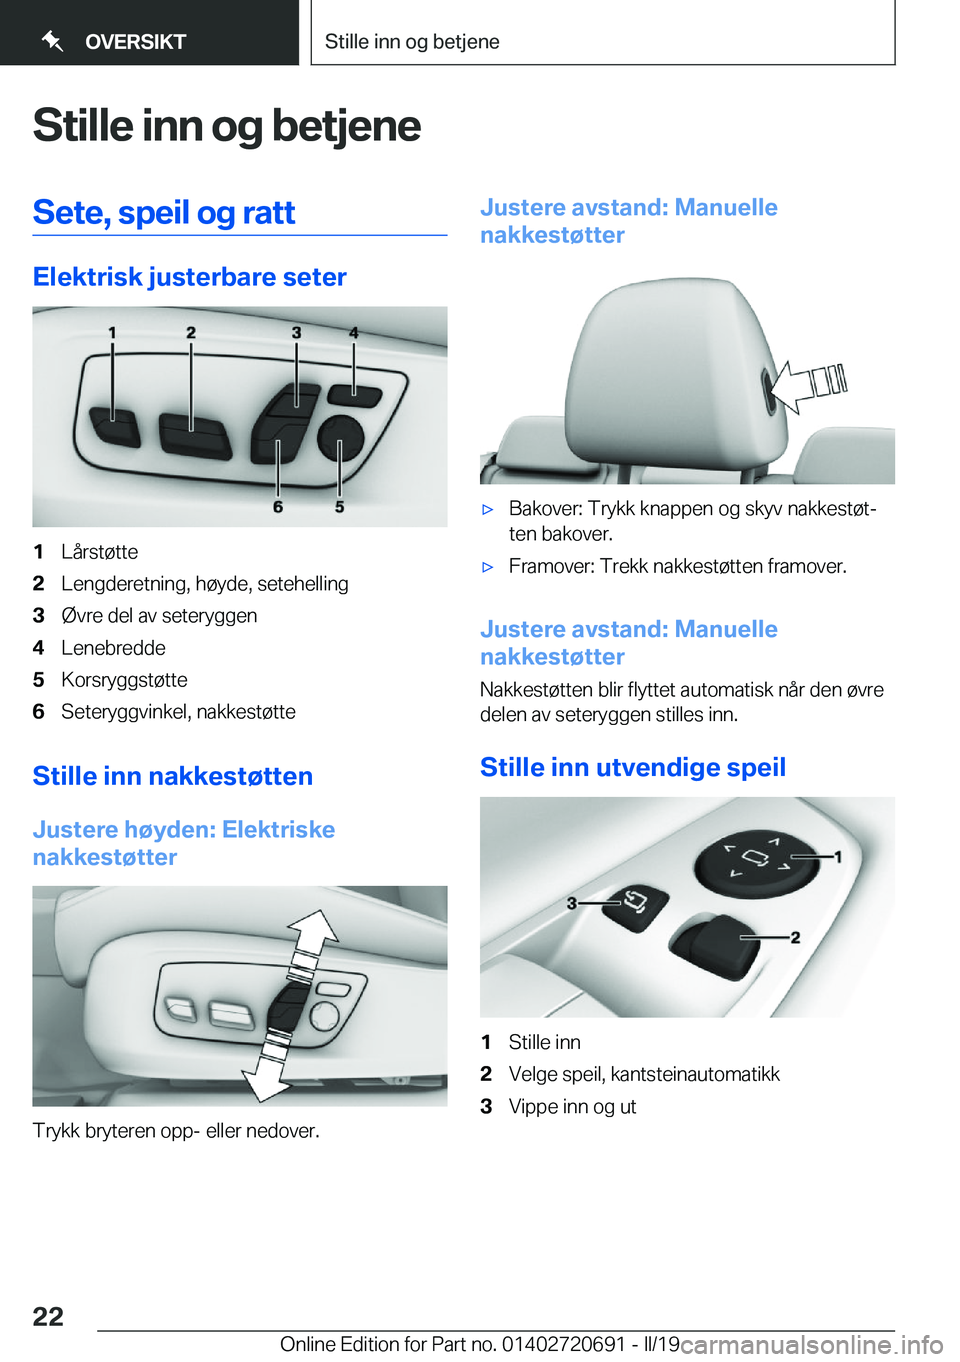 BMW M5 2019  InstruksjonsbØker (in Norwegian) �S�t�i�l�l�e��i�n�n��o�g��b�e�t�j�e�n�e�S�e�t�e�,��s�p�e�i�l��o�g��r�a�t�t
�E�l�e�k�t�r�i�s�k��j�u�s�t�e�r�b�a�r�e��s�e�t�e�r
�1�L�å�r�s�t�